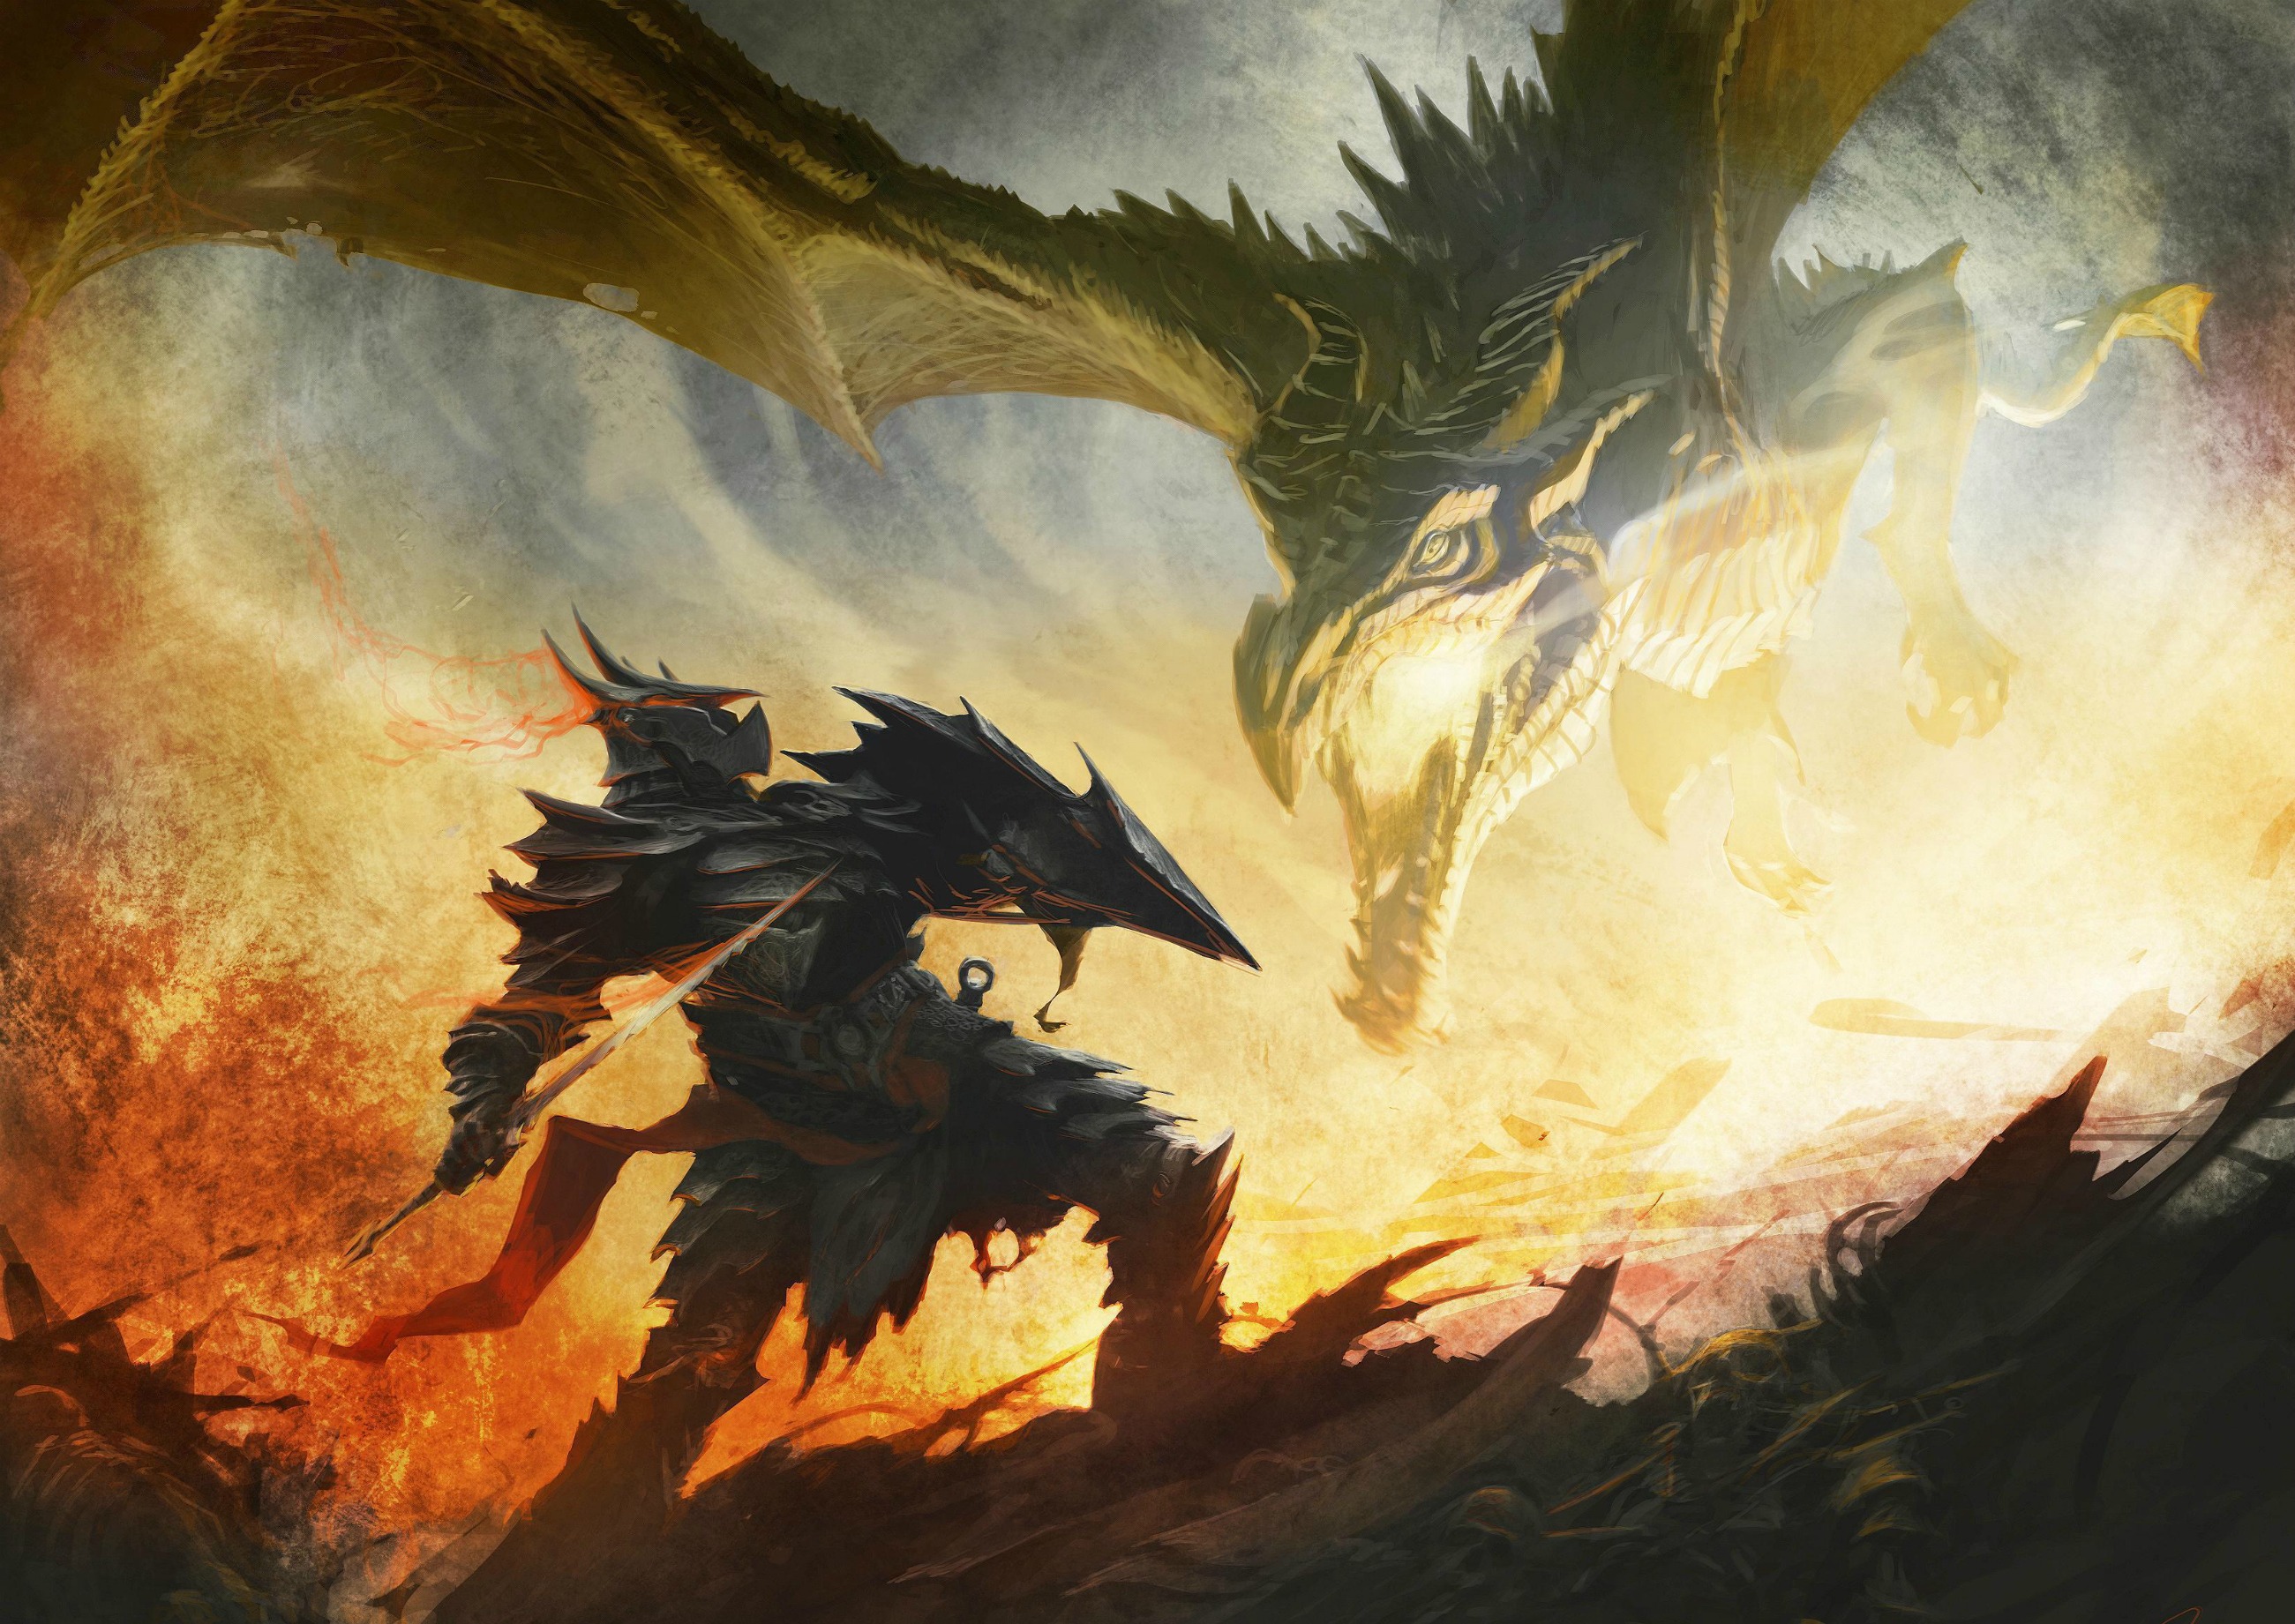 Download mobile wallpaper The Elder Scrolls V: Skyrim, Skyrim, The Elder Scrolls, Dragon, Video Game for free.